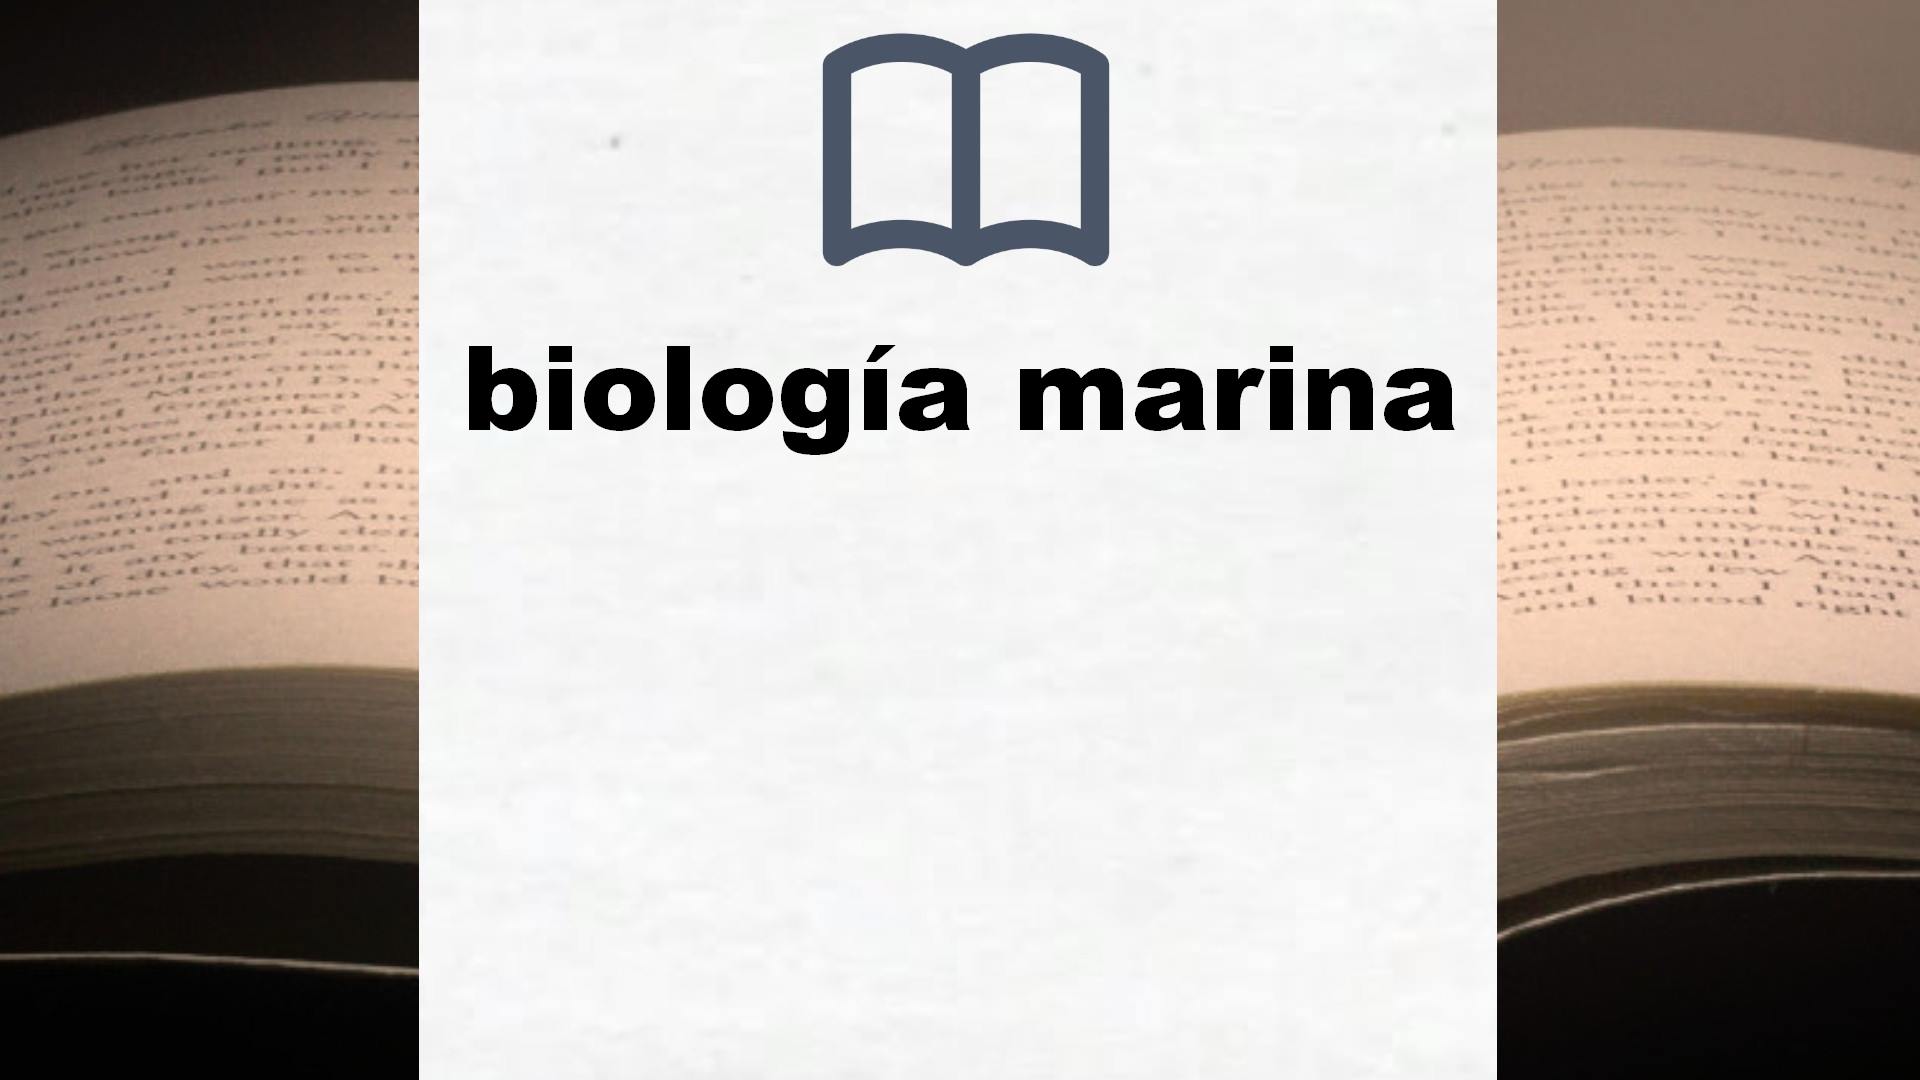 Libros sobre biología marina